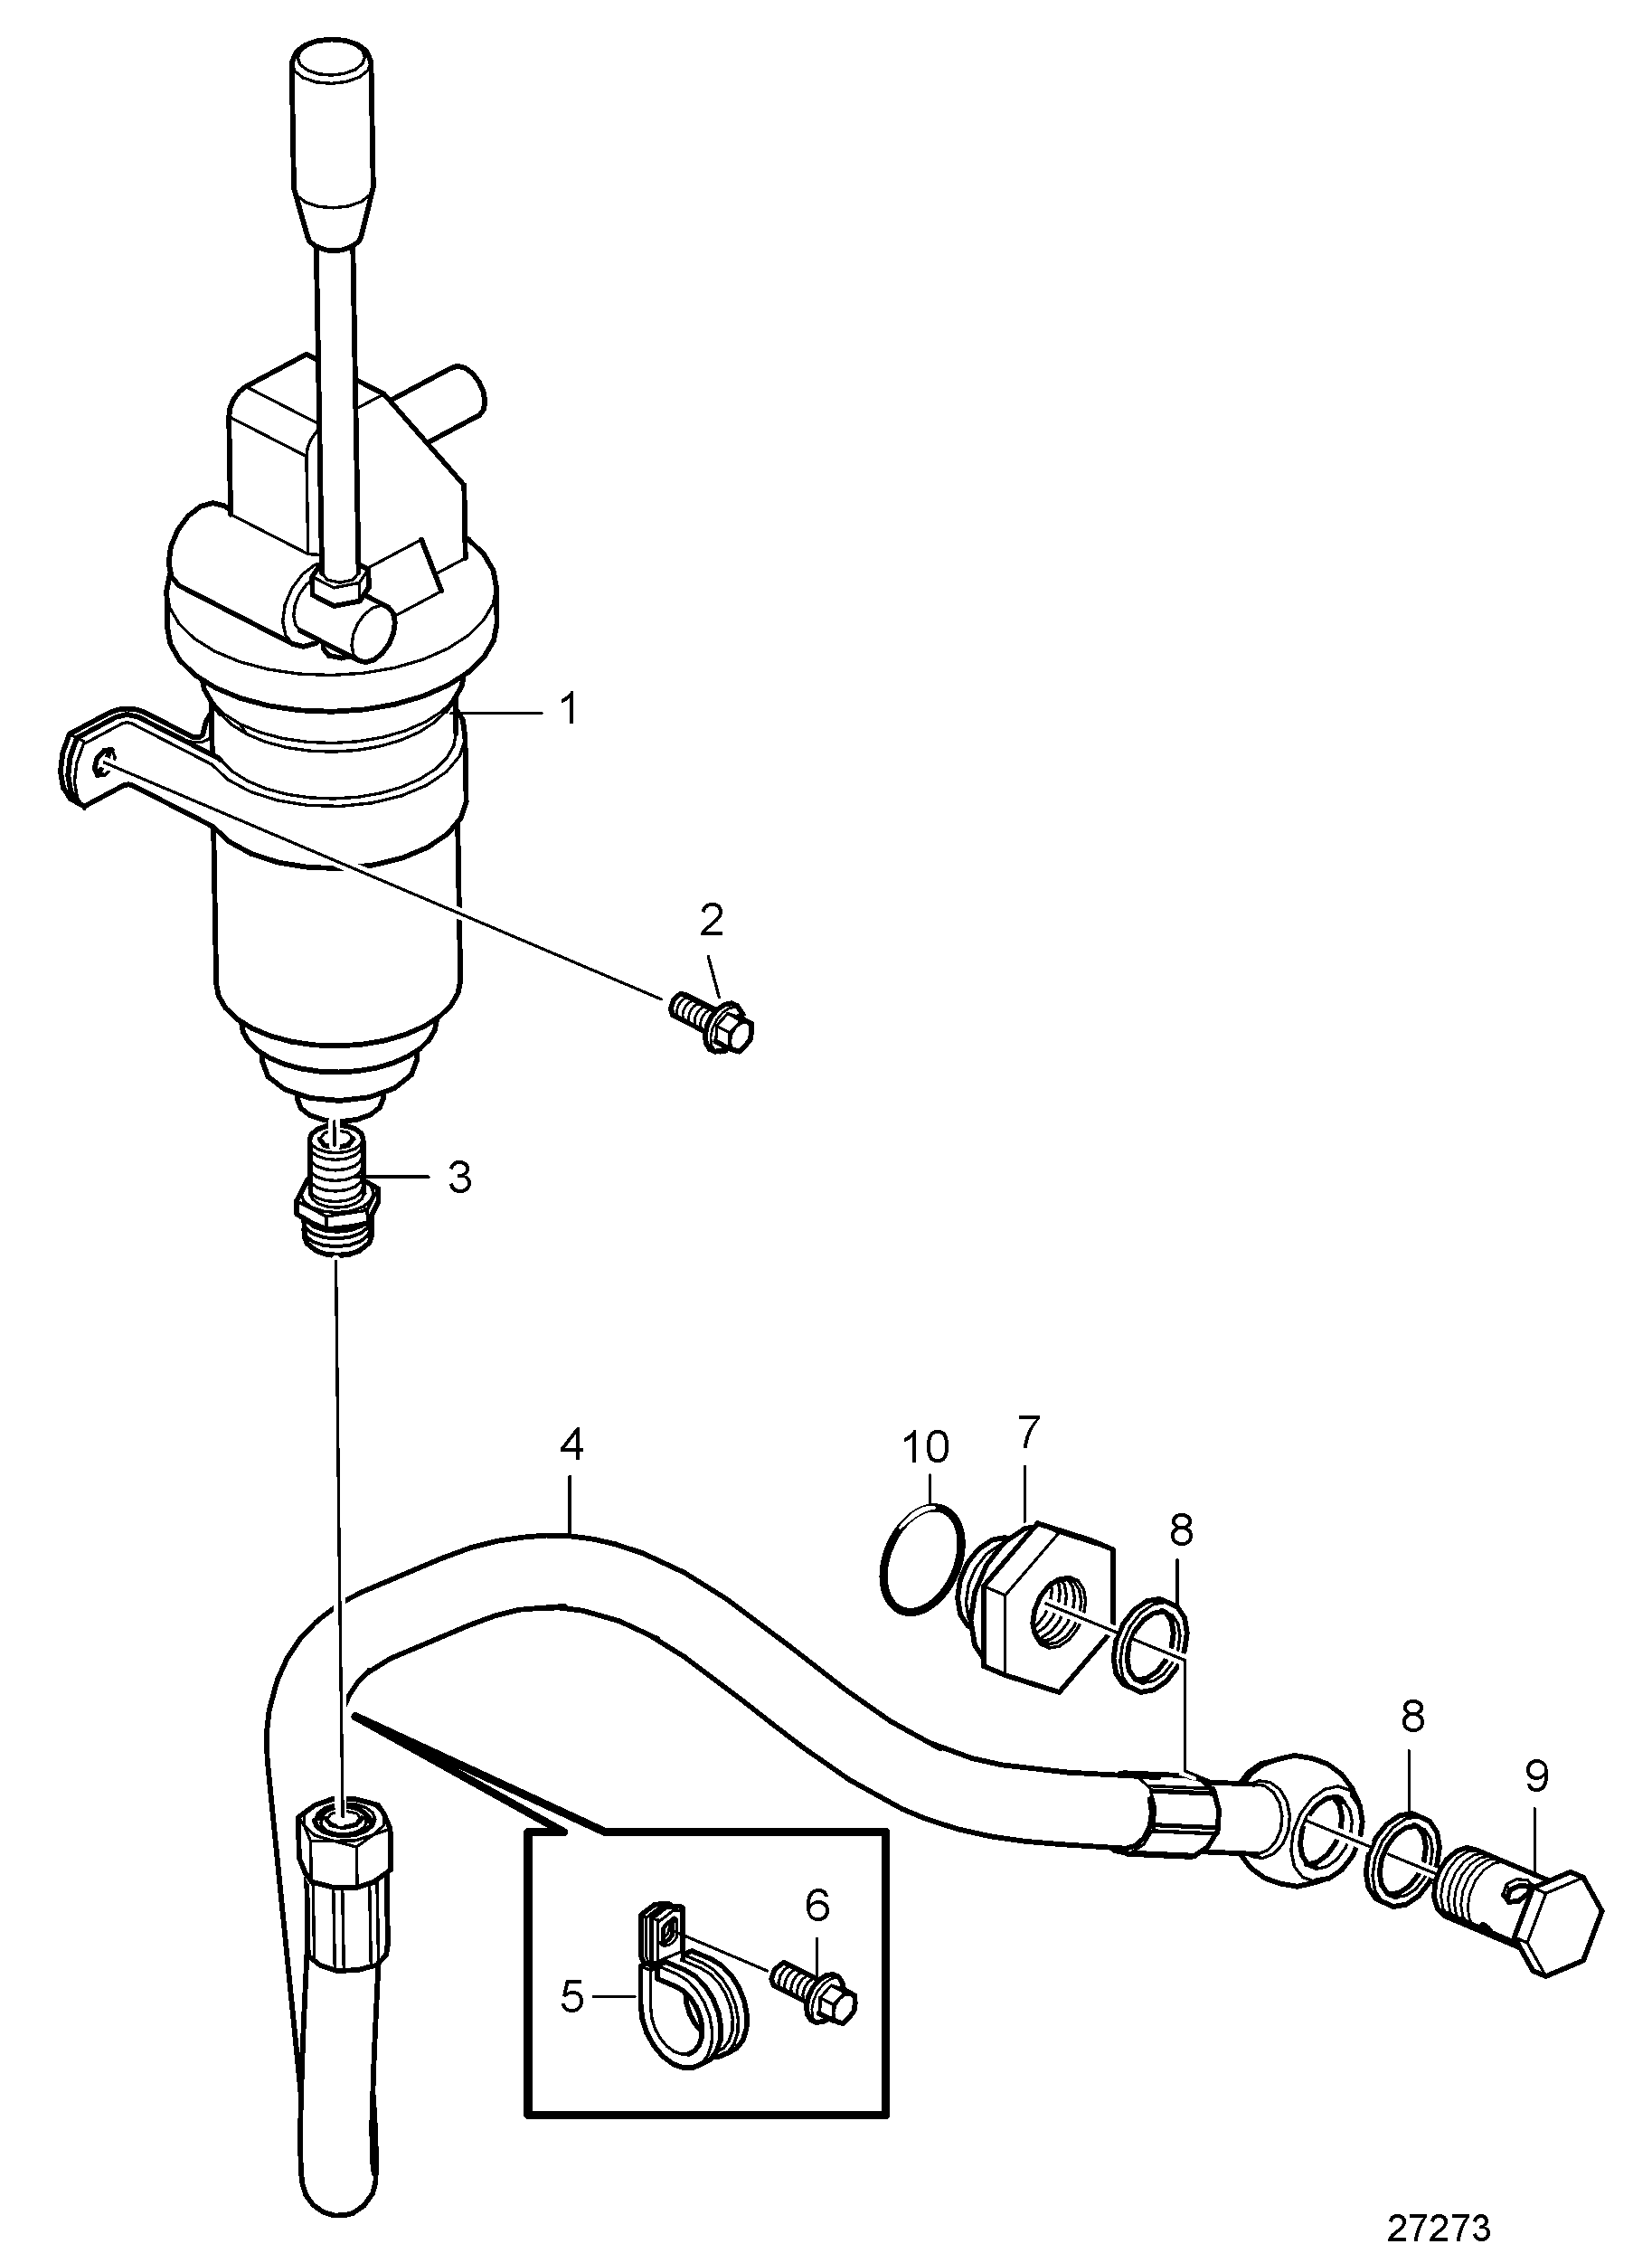 Pompe de vidange d'huile et pièces de montage, montée sur moteur pour carter d'huile en plastique